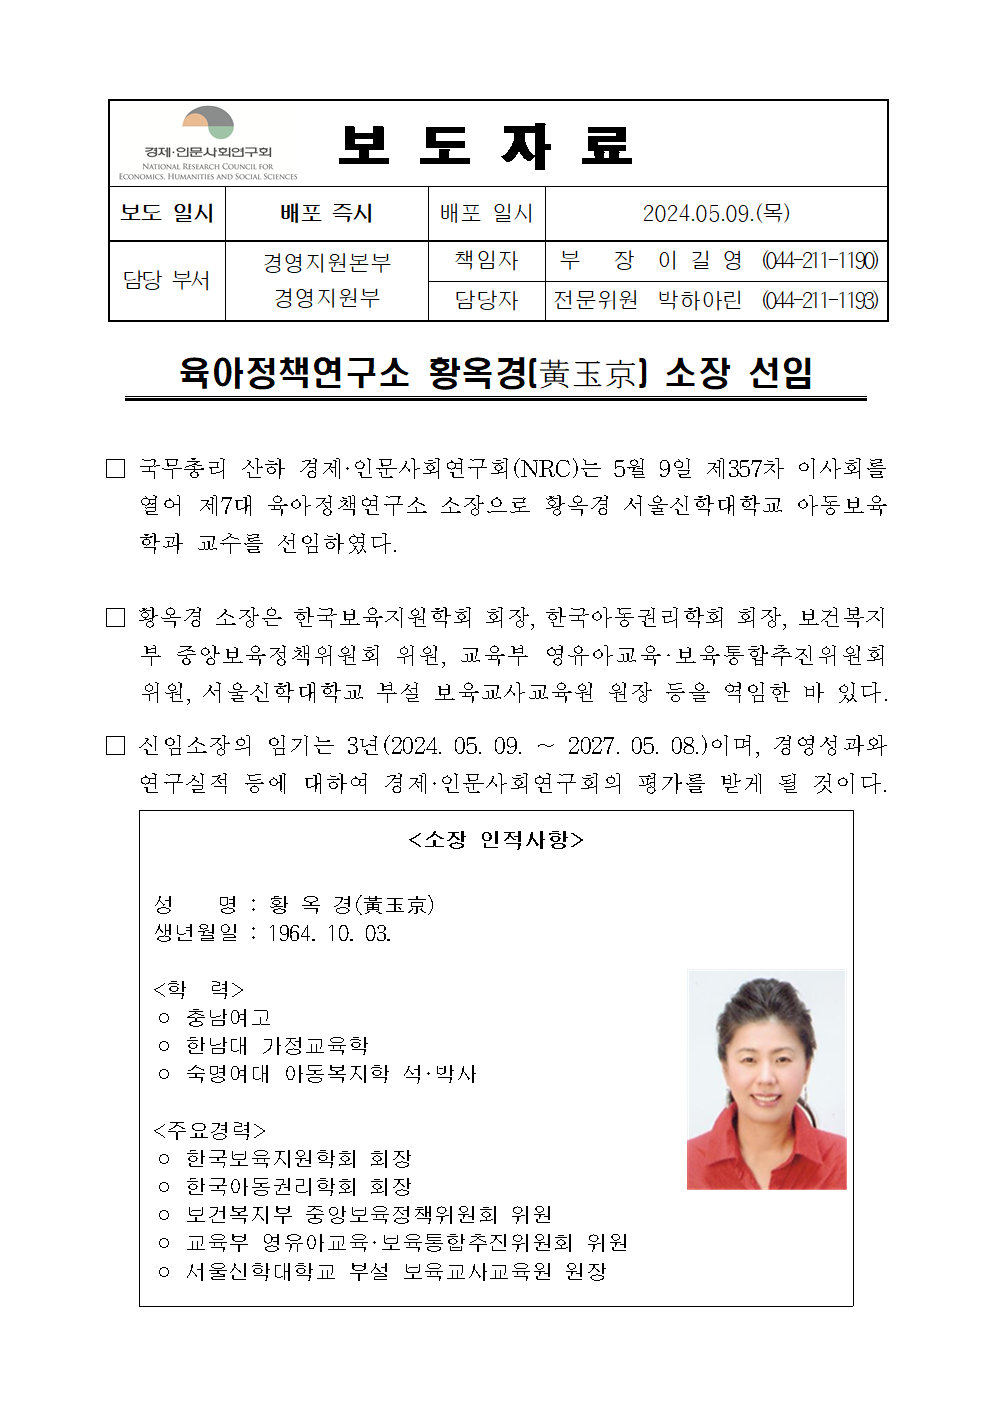 육아정책연구소 황옥경(黃玉京) 소장 선임 보도자료 상세 하단 참조